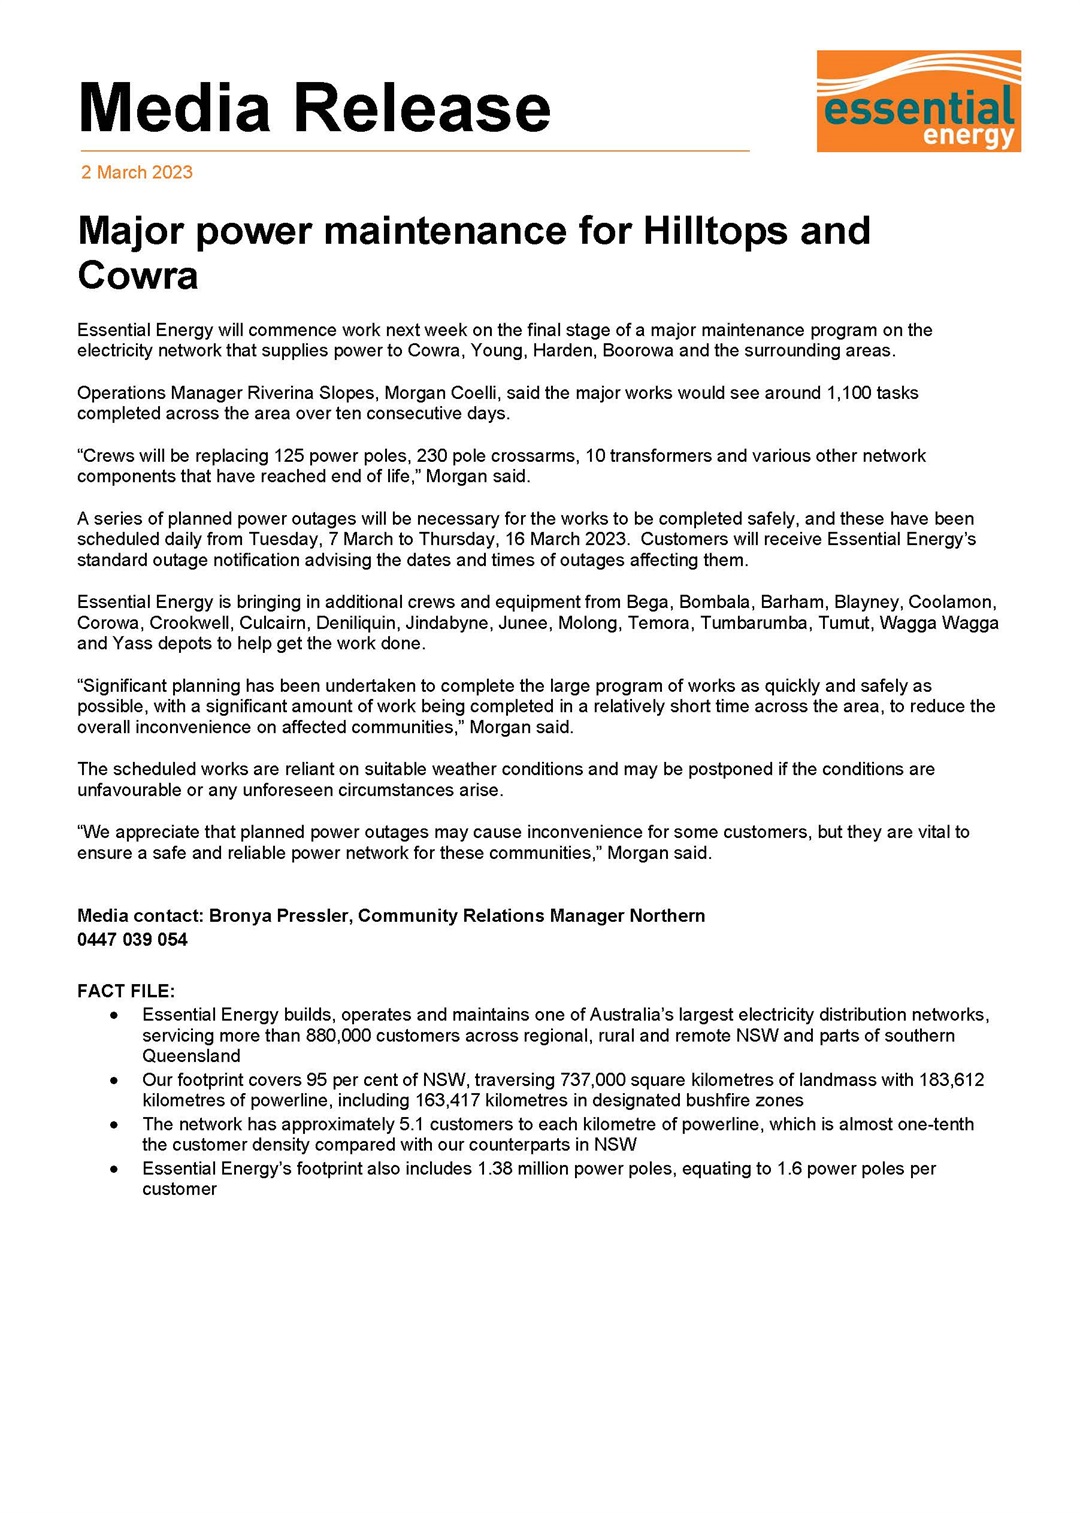 Media Release - Major Power Maintenance for Hilltops & Cowra